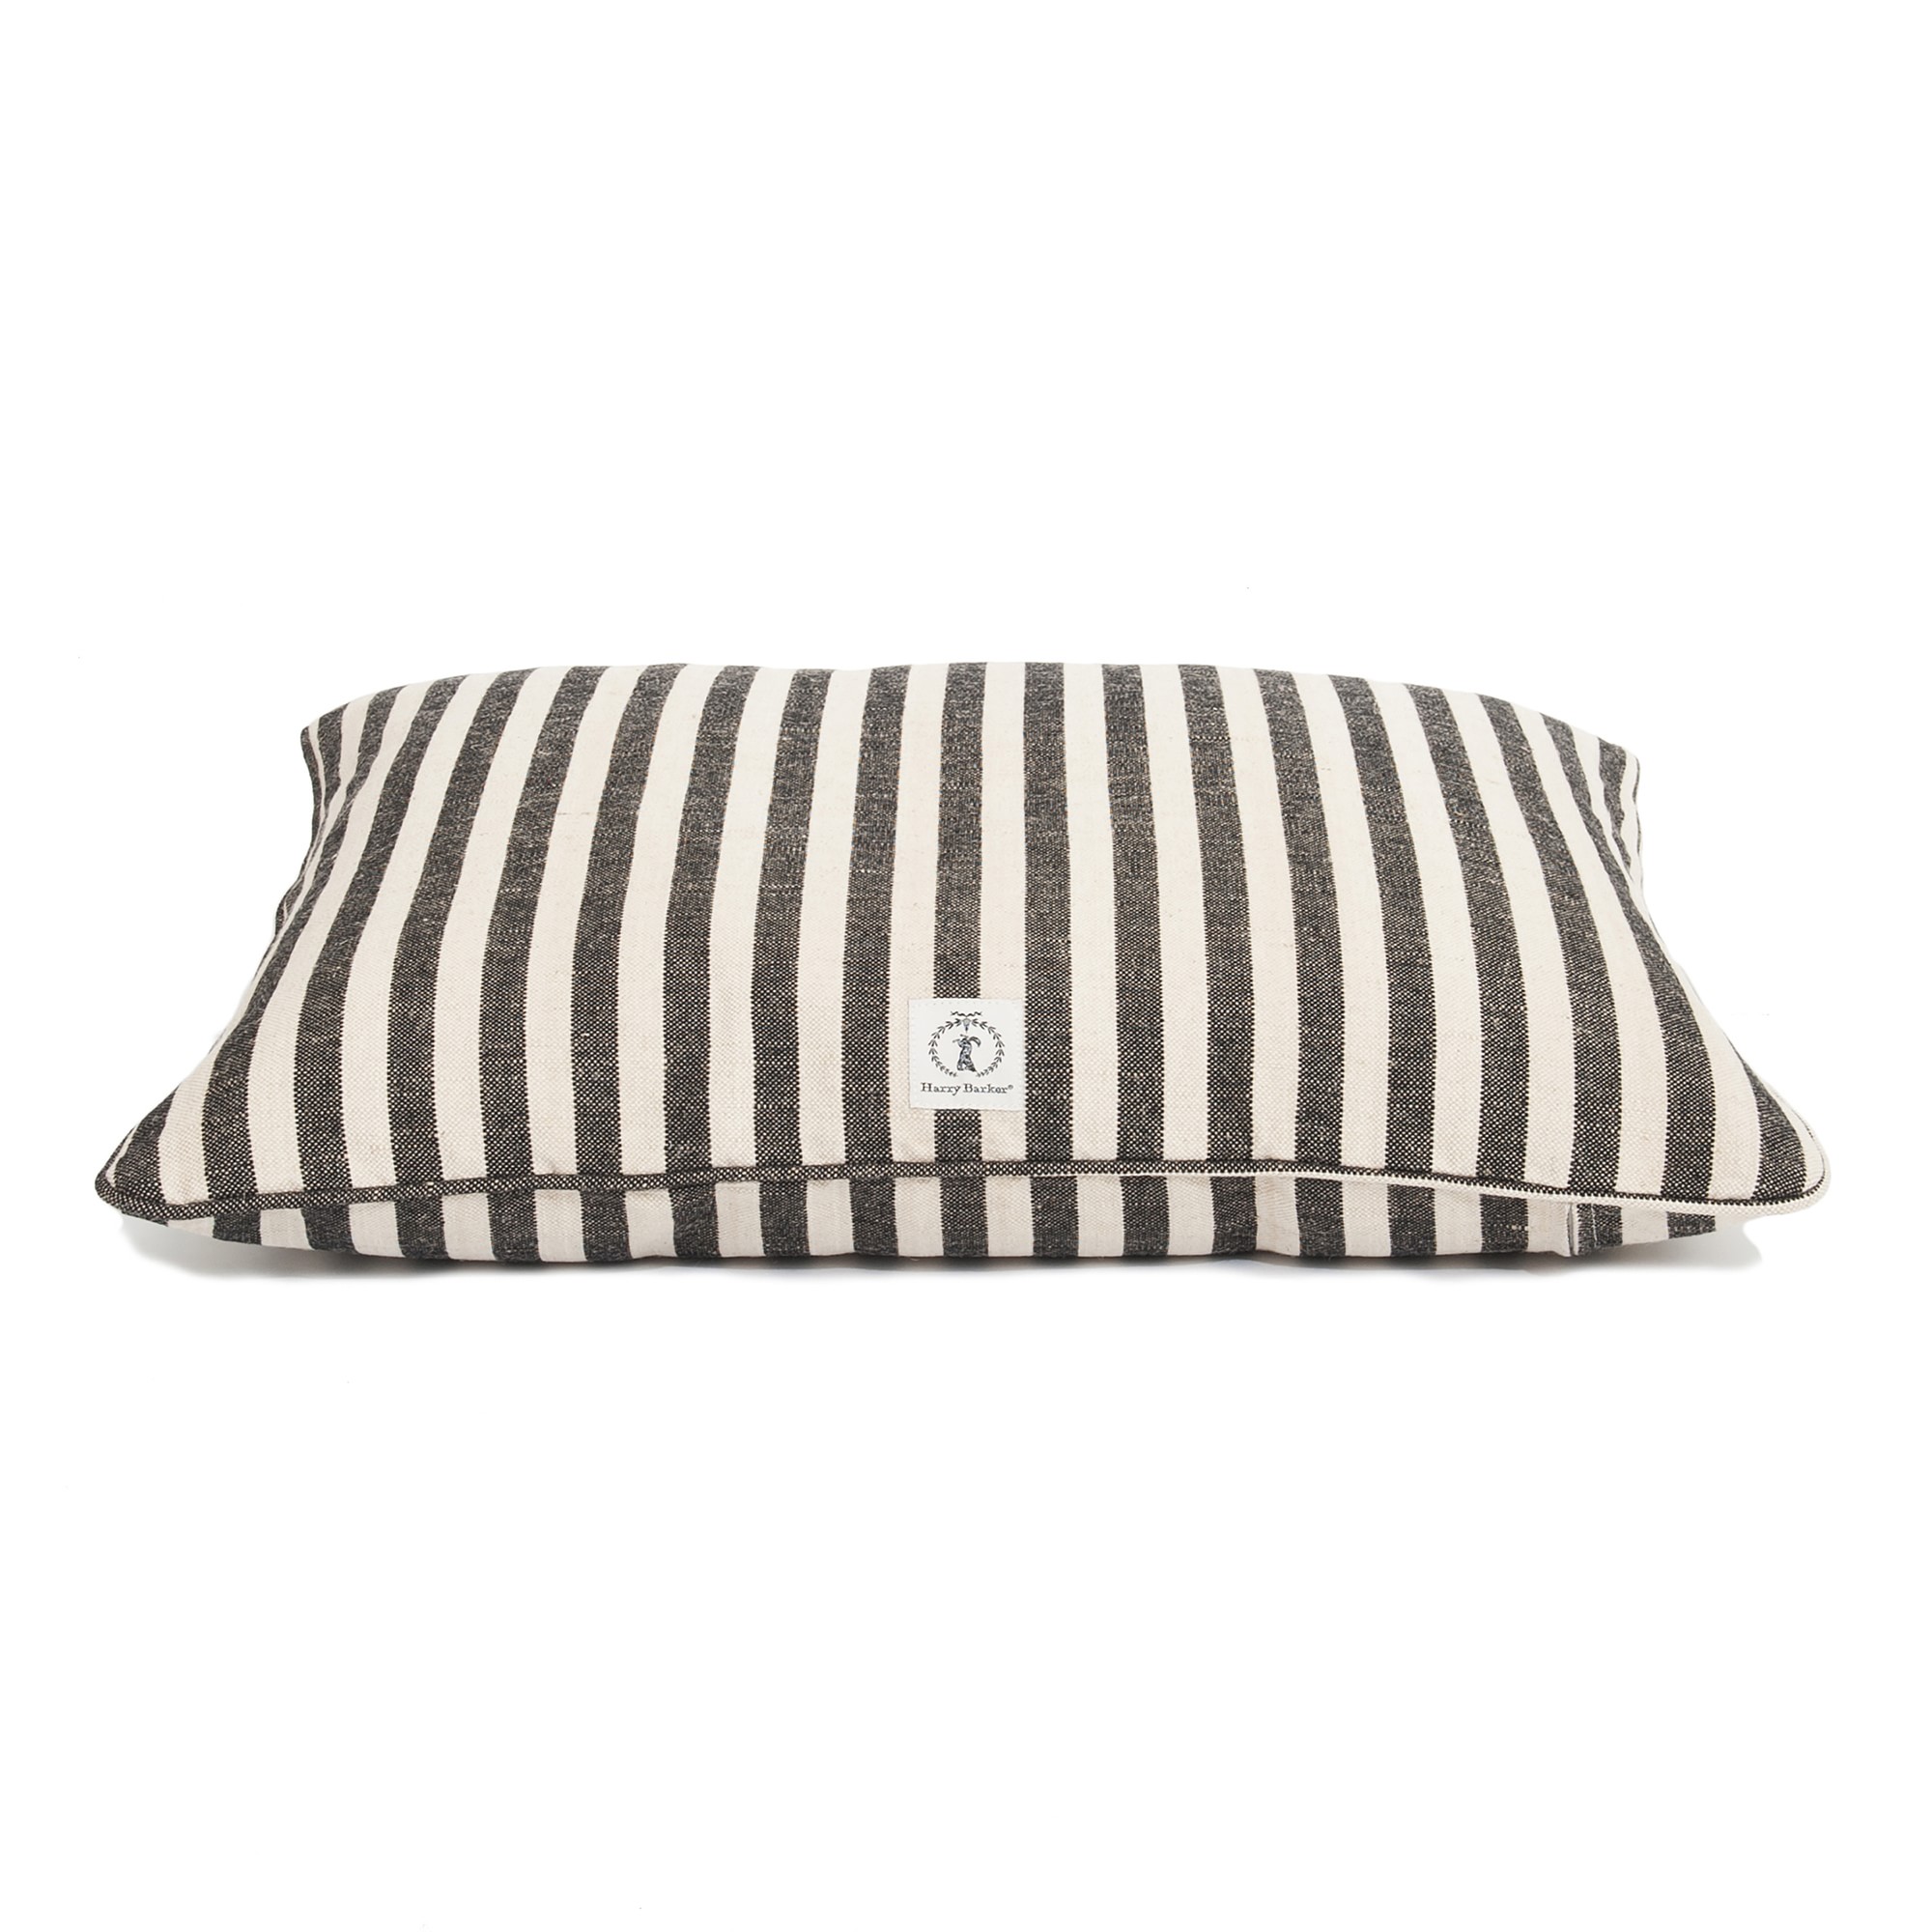 Harry Barker Vintage Stripe Envelope Dog Bed, Small, Black